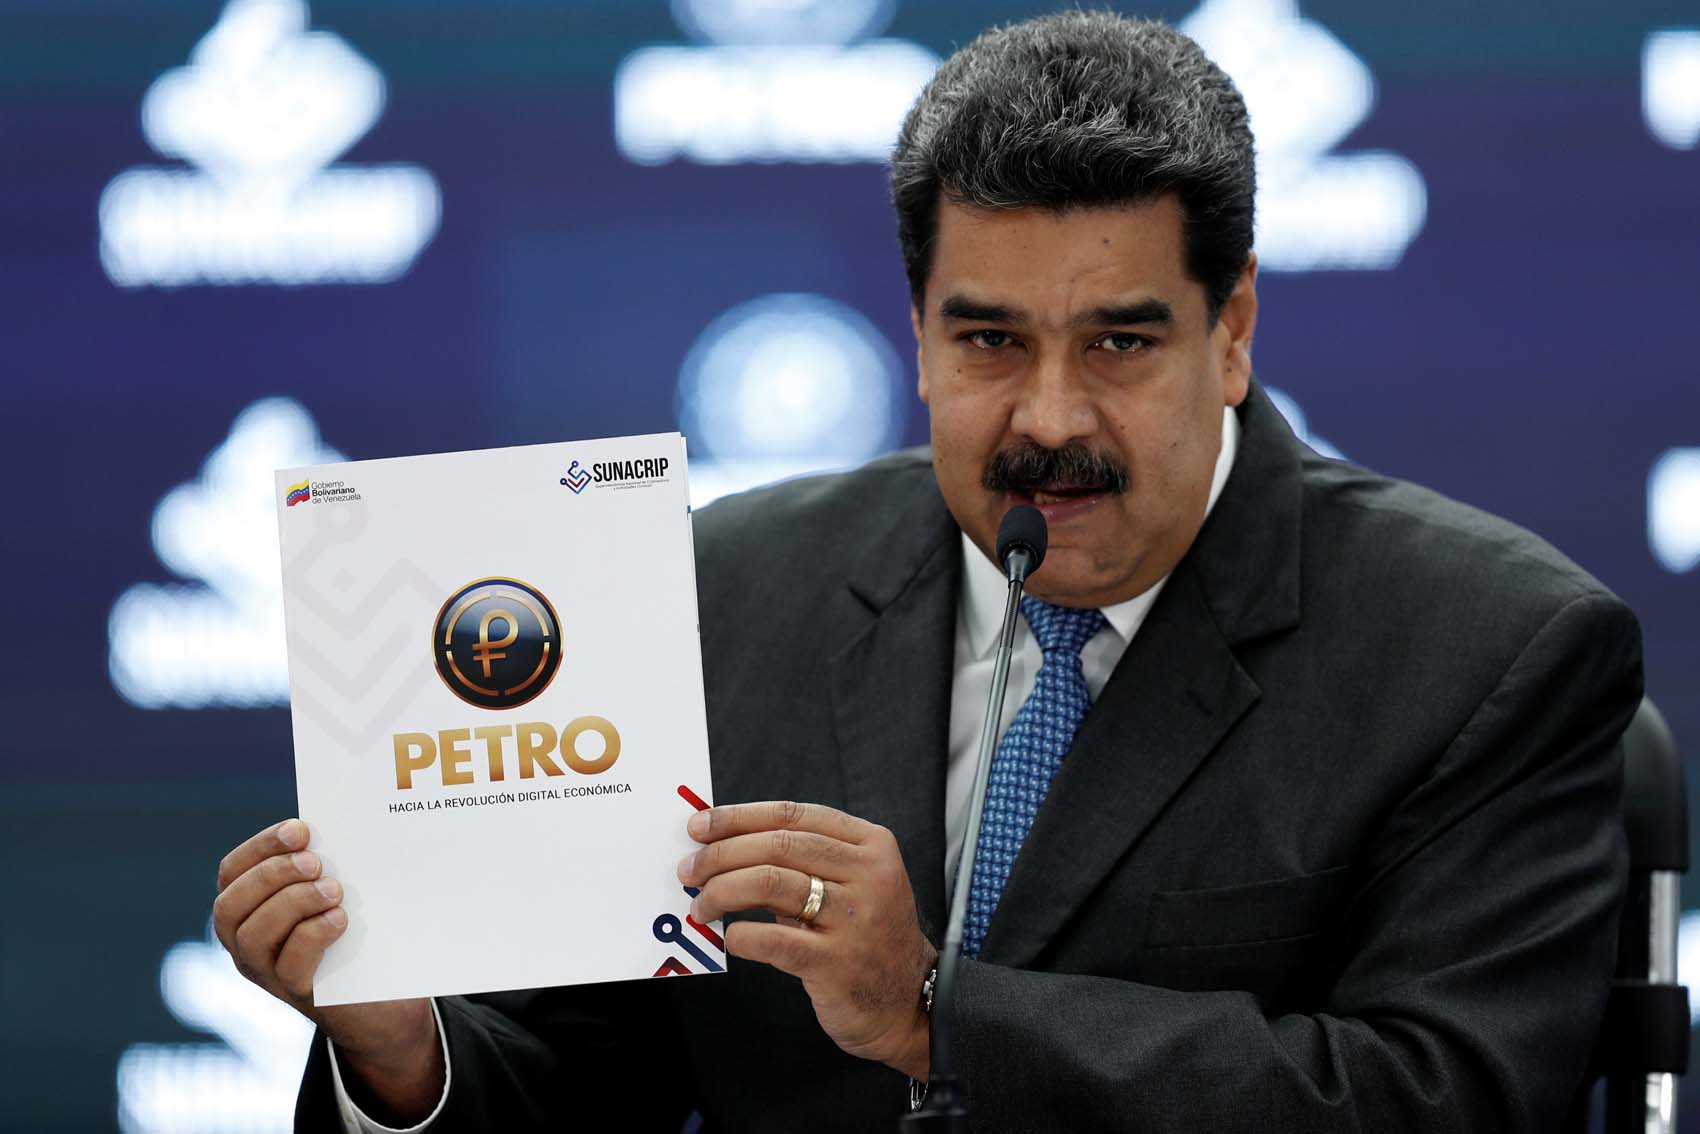 Qué fue del Petro: La criptomoneda con la que Maduro quería evadir las sanciones de EEUU